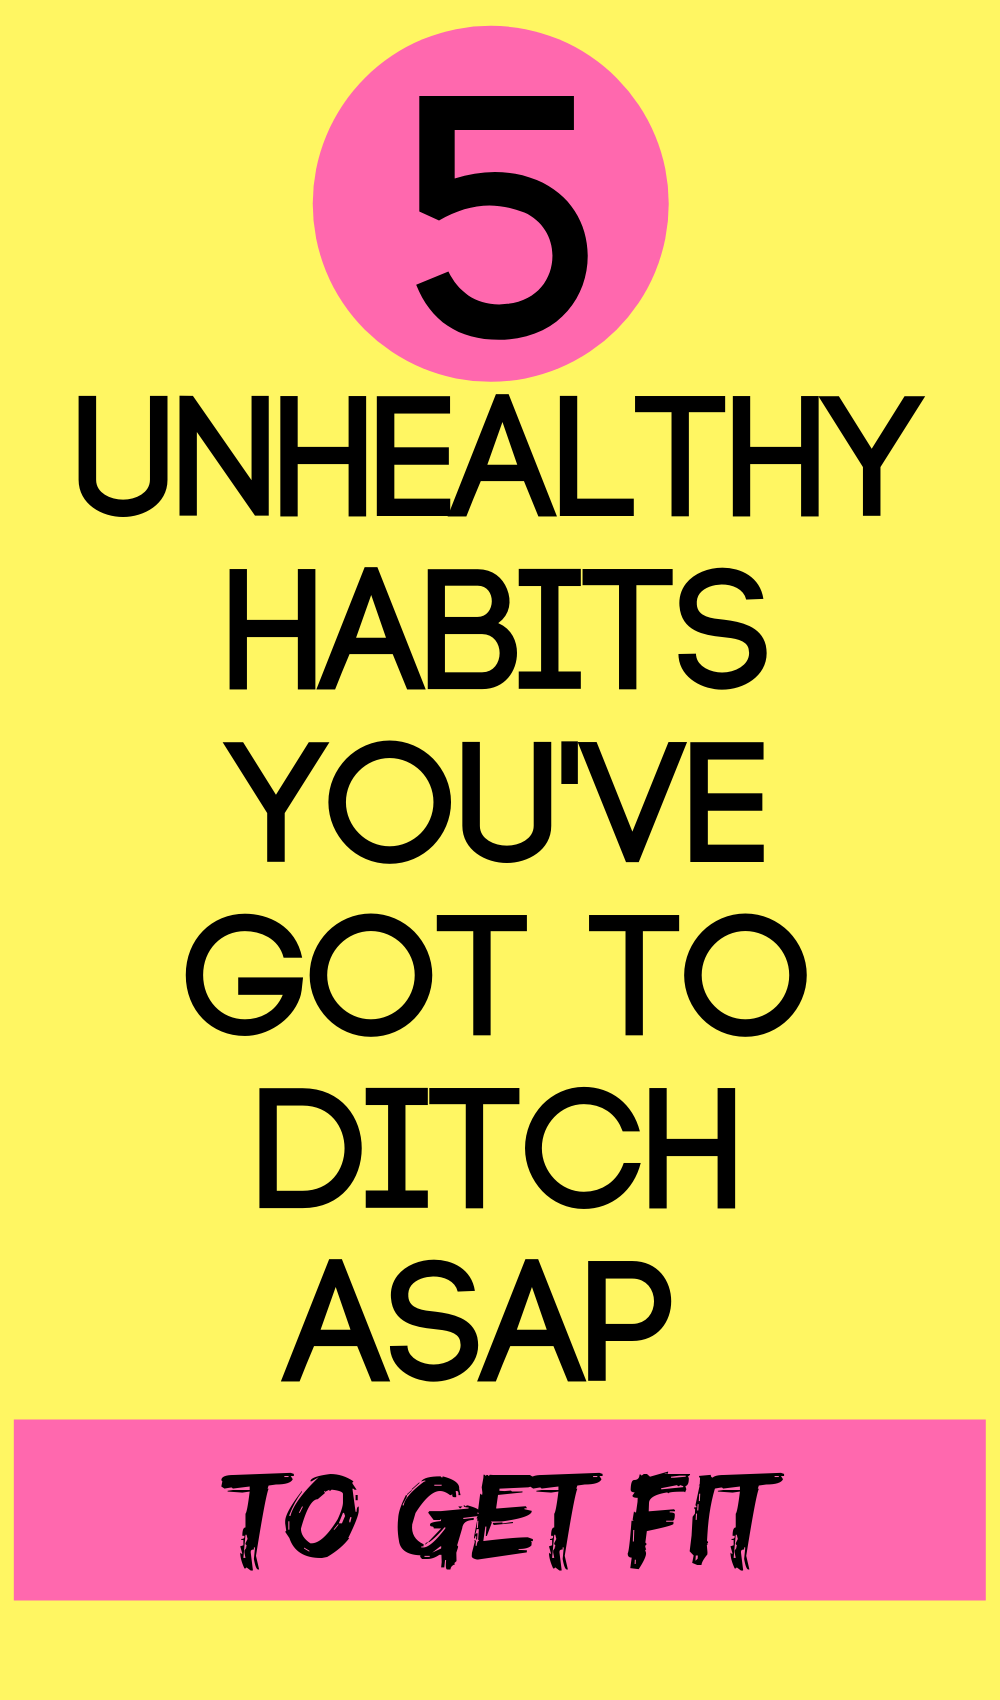 bad health habits